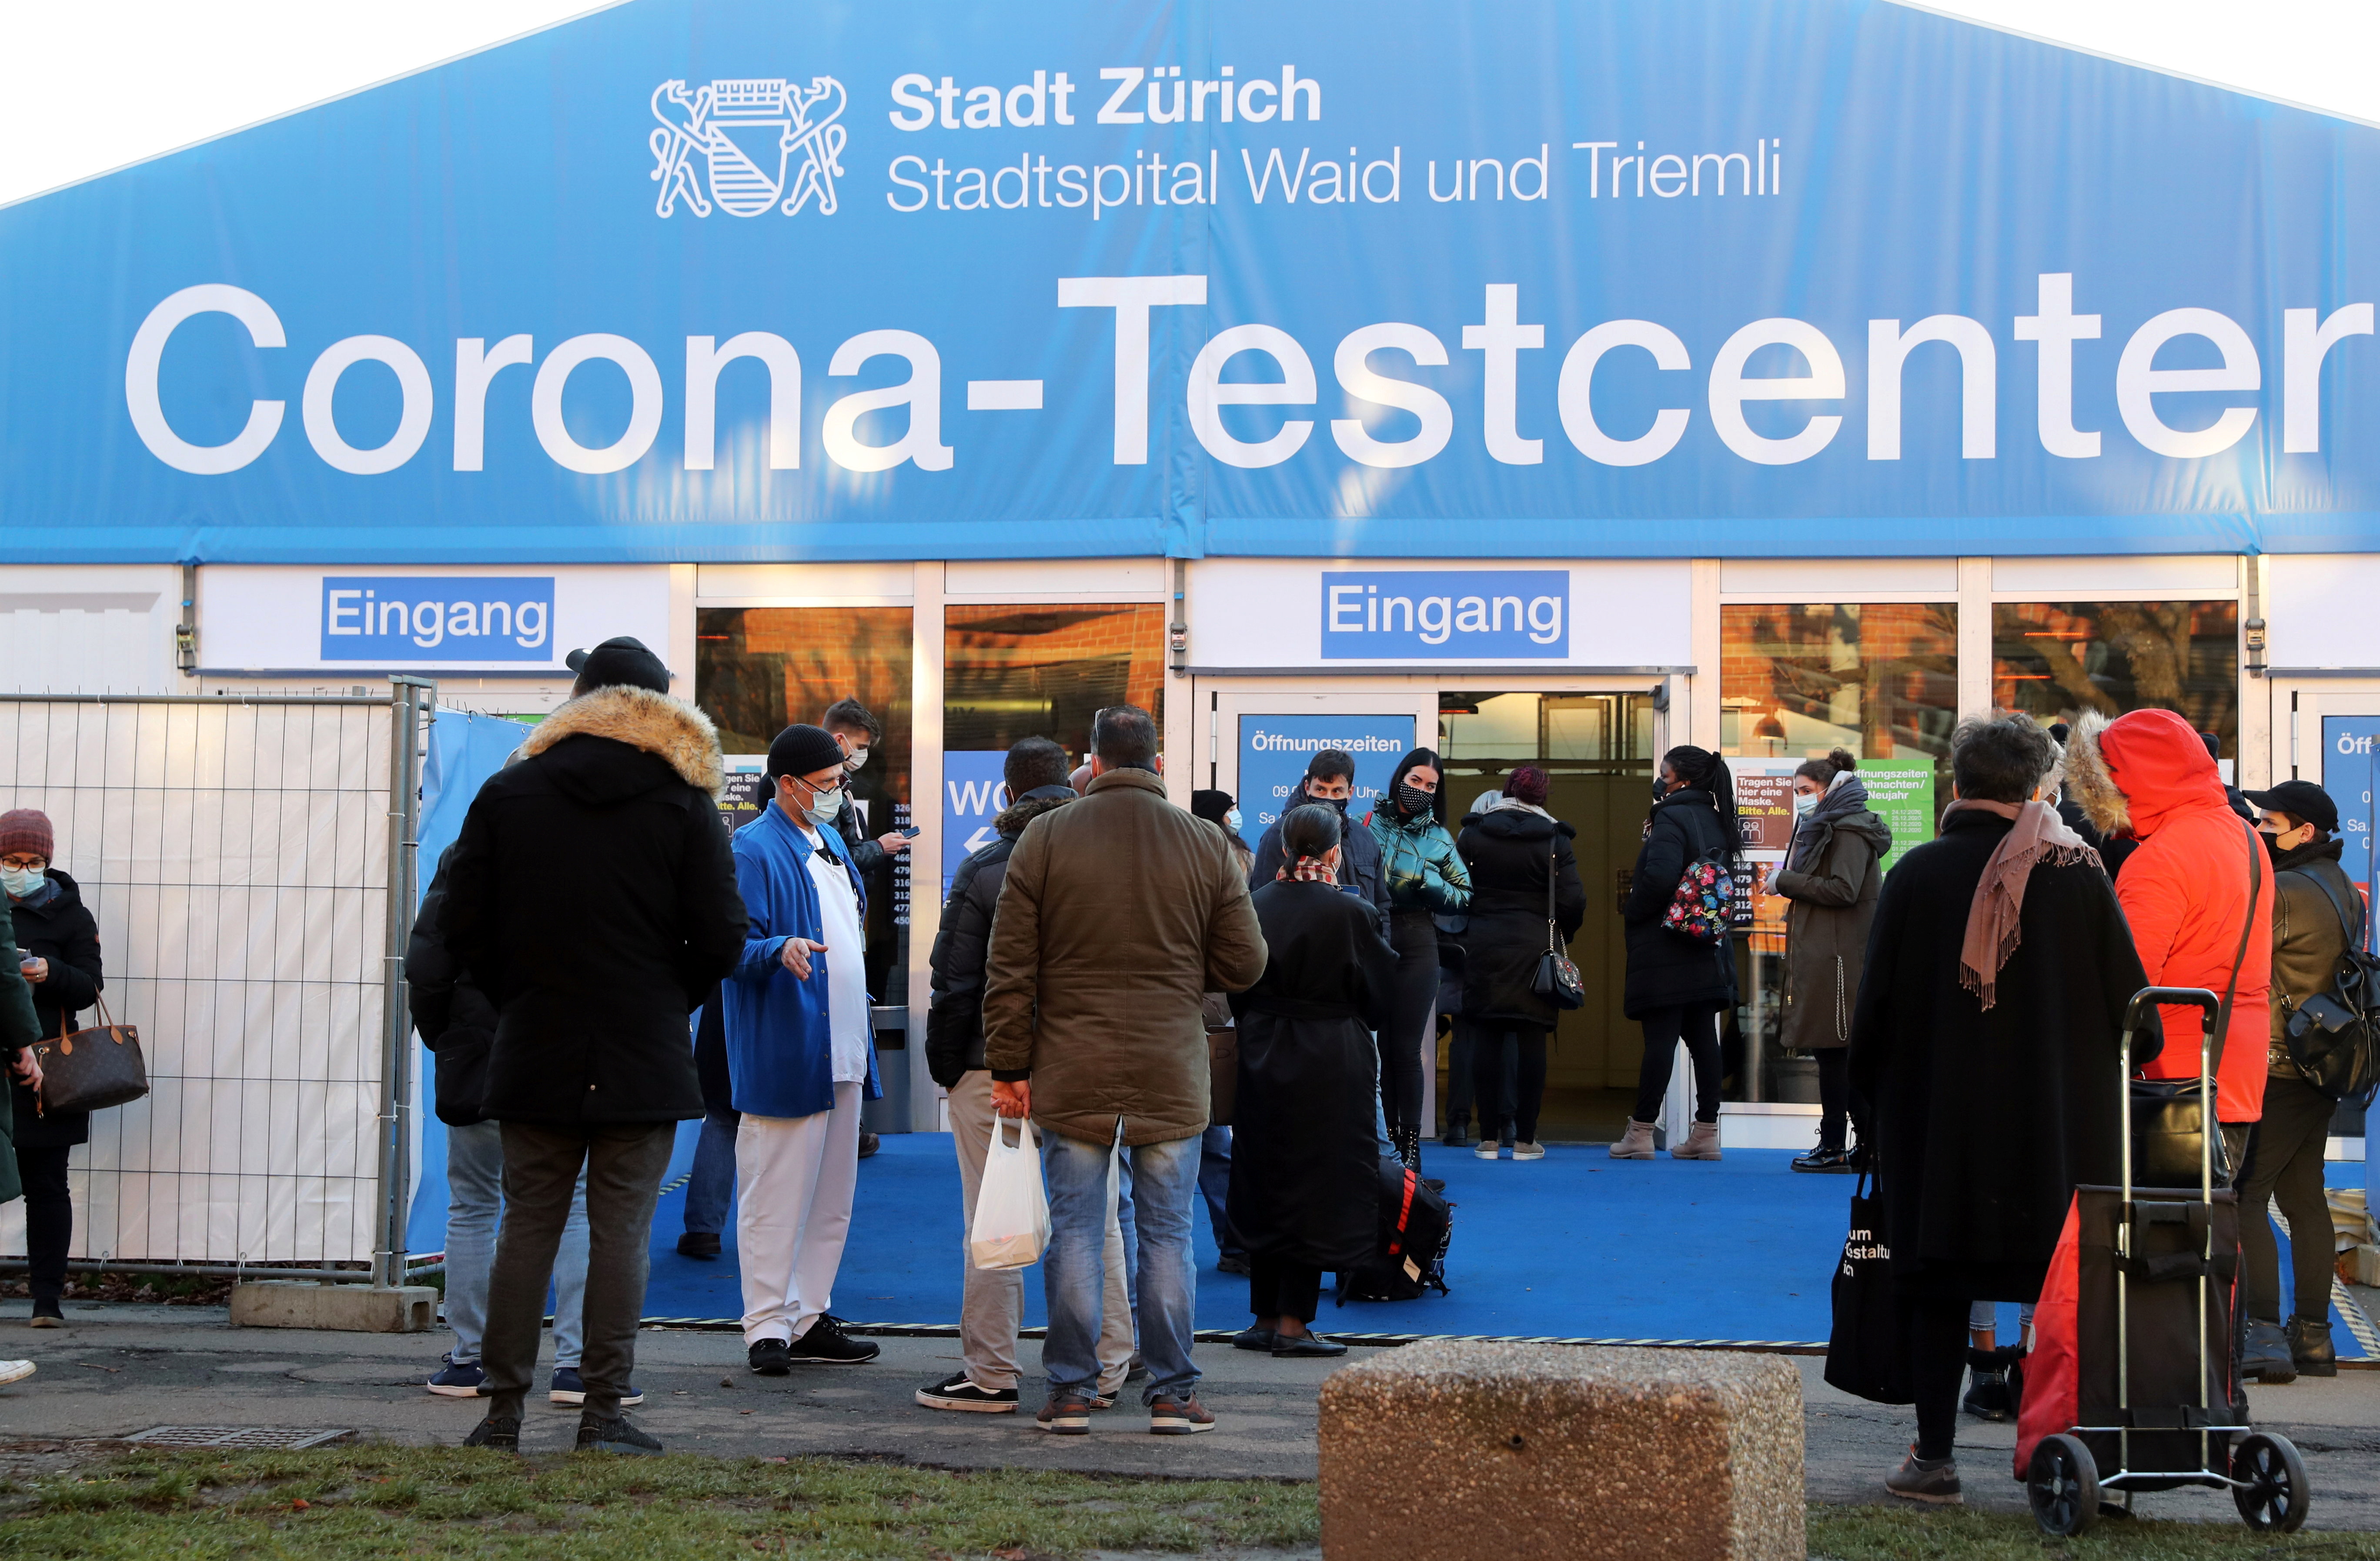 Un centro de testeo de coronavirus en Zurich, Suiza, la ciudad más "cara" del mundo  REUTERS/Arnd Wiegmann